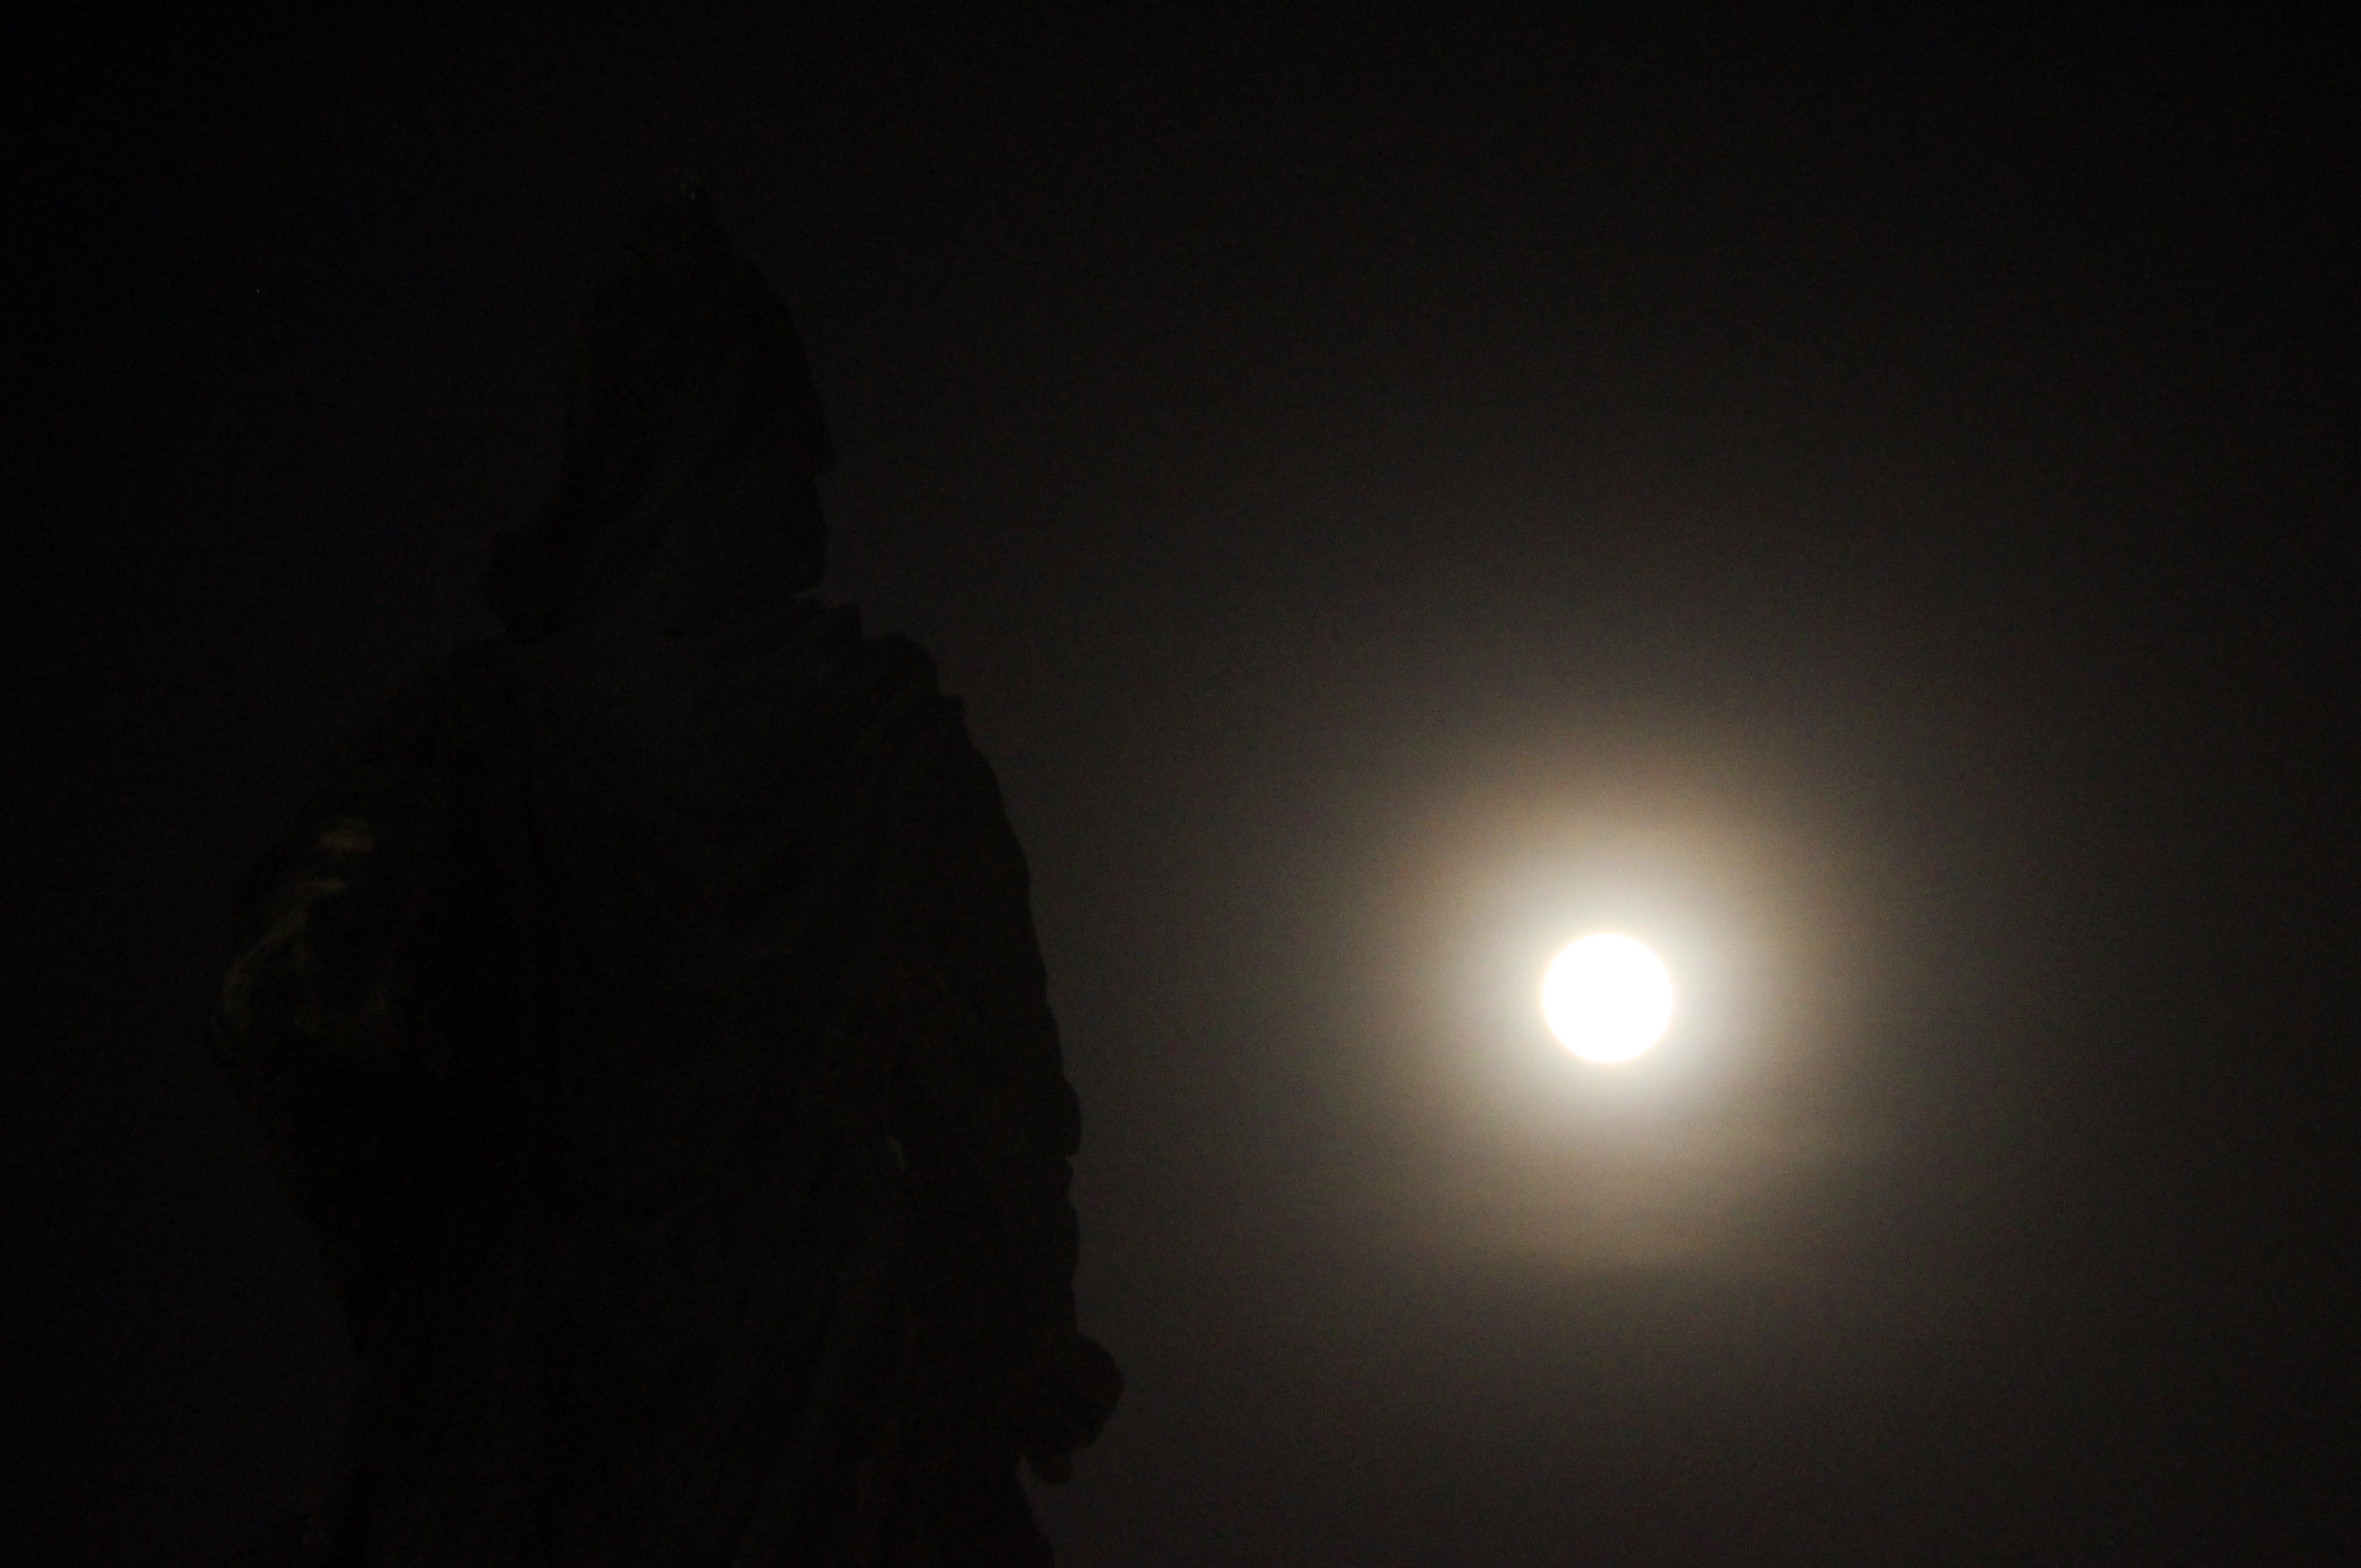 Siêu trăng, Sài Gòn: Hãy cùng nhìn ngắm bức ảnh về siêu trăng đầy ma mị trên bầu trời Sài Gòn. Hình ảnh này sẽ giúp bạn khơi gợi được trí tưởng tượng và cảm nhận về sự u ám và đẹp đẽ của ánh trăng rằm đêm.